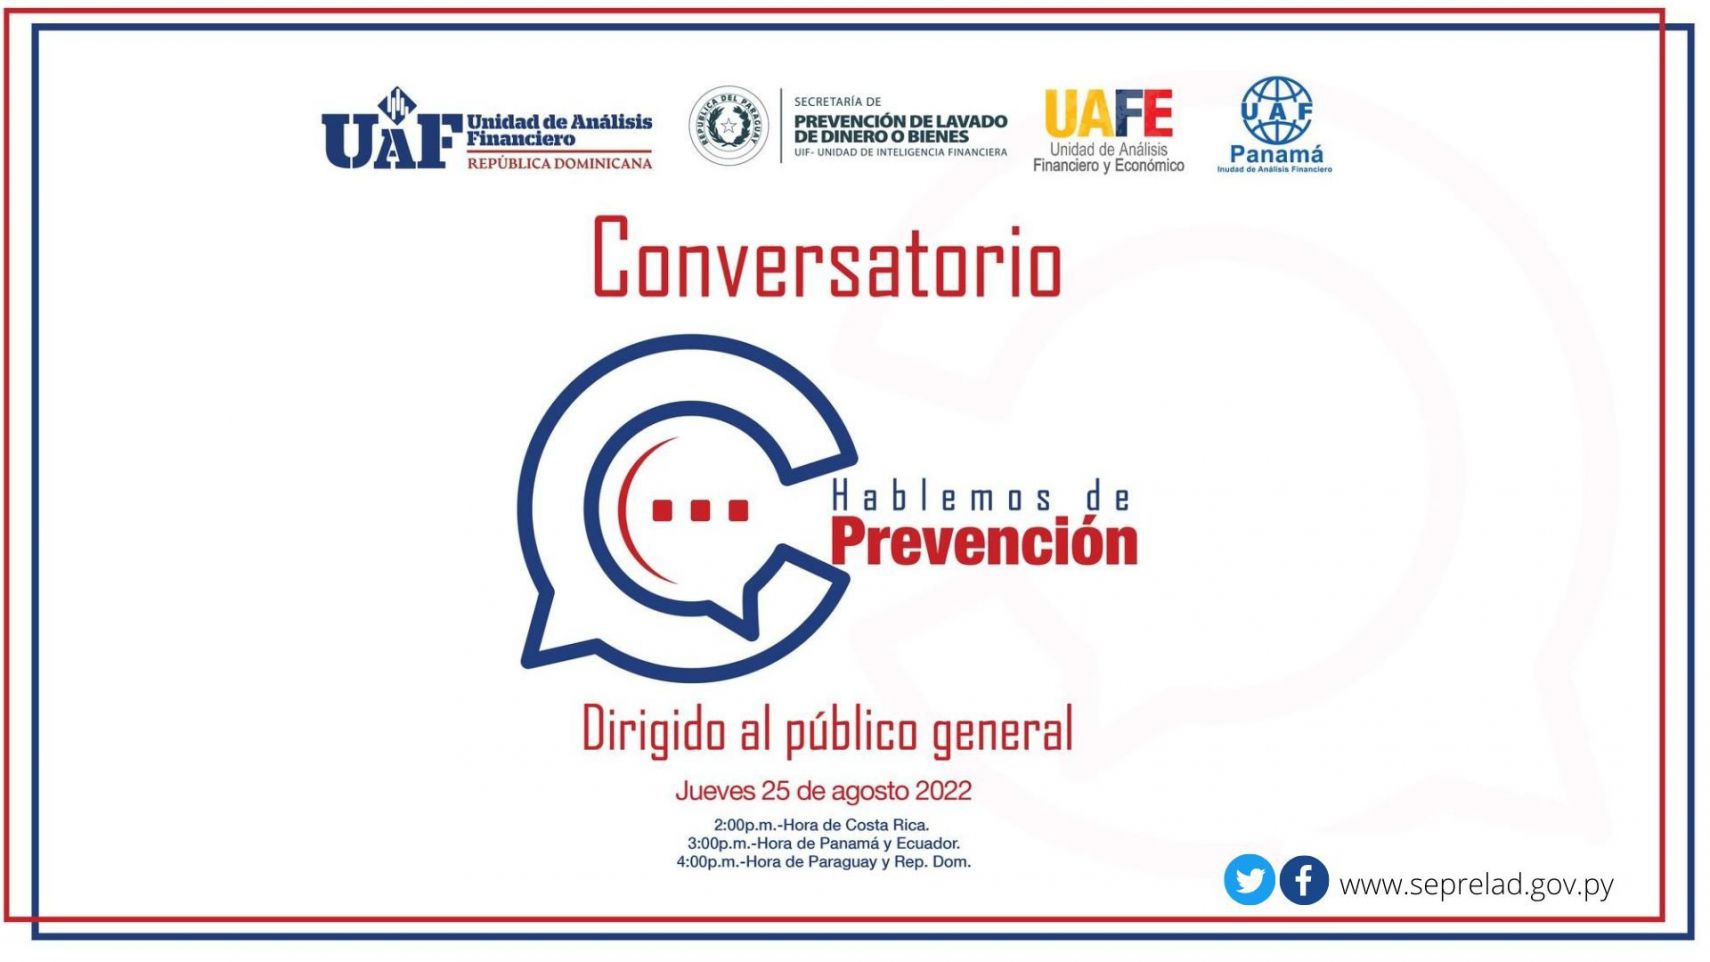 Con éxito se llevó a cabo el segundo conversatorio “Hablemos de Prevención”